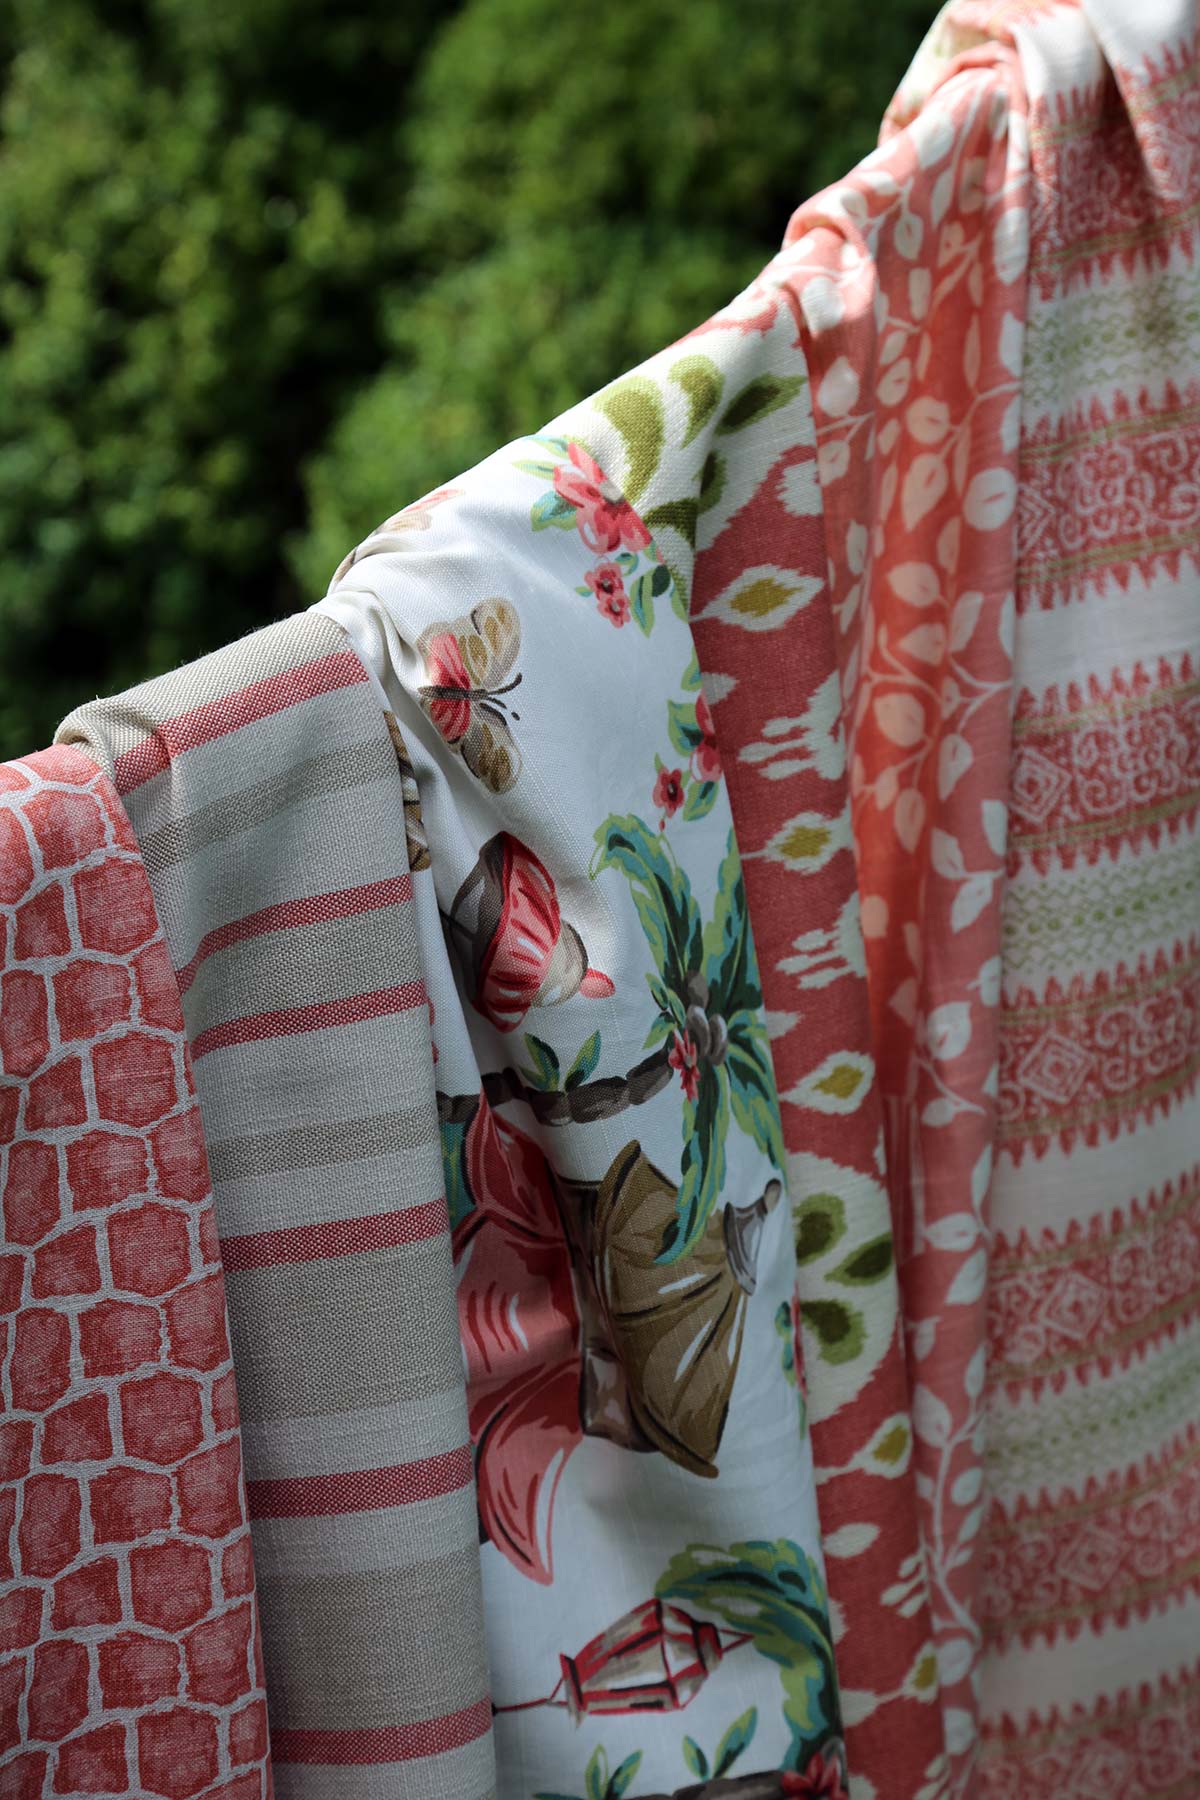 Charlotte Moss Fabricut patterns on fabrics